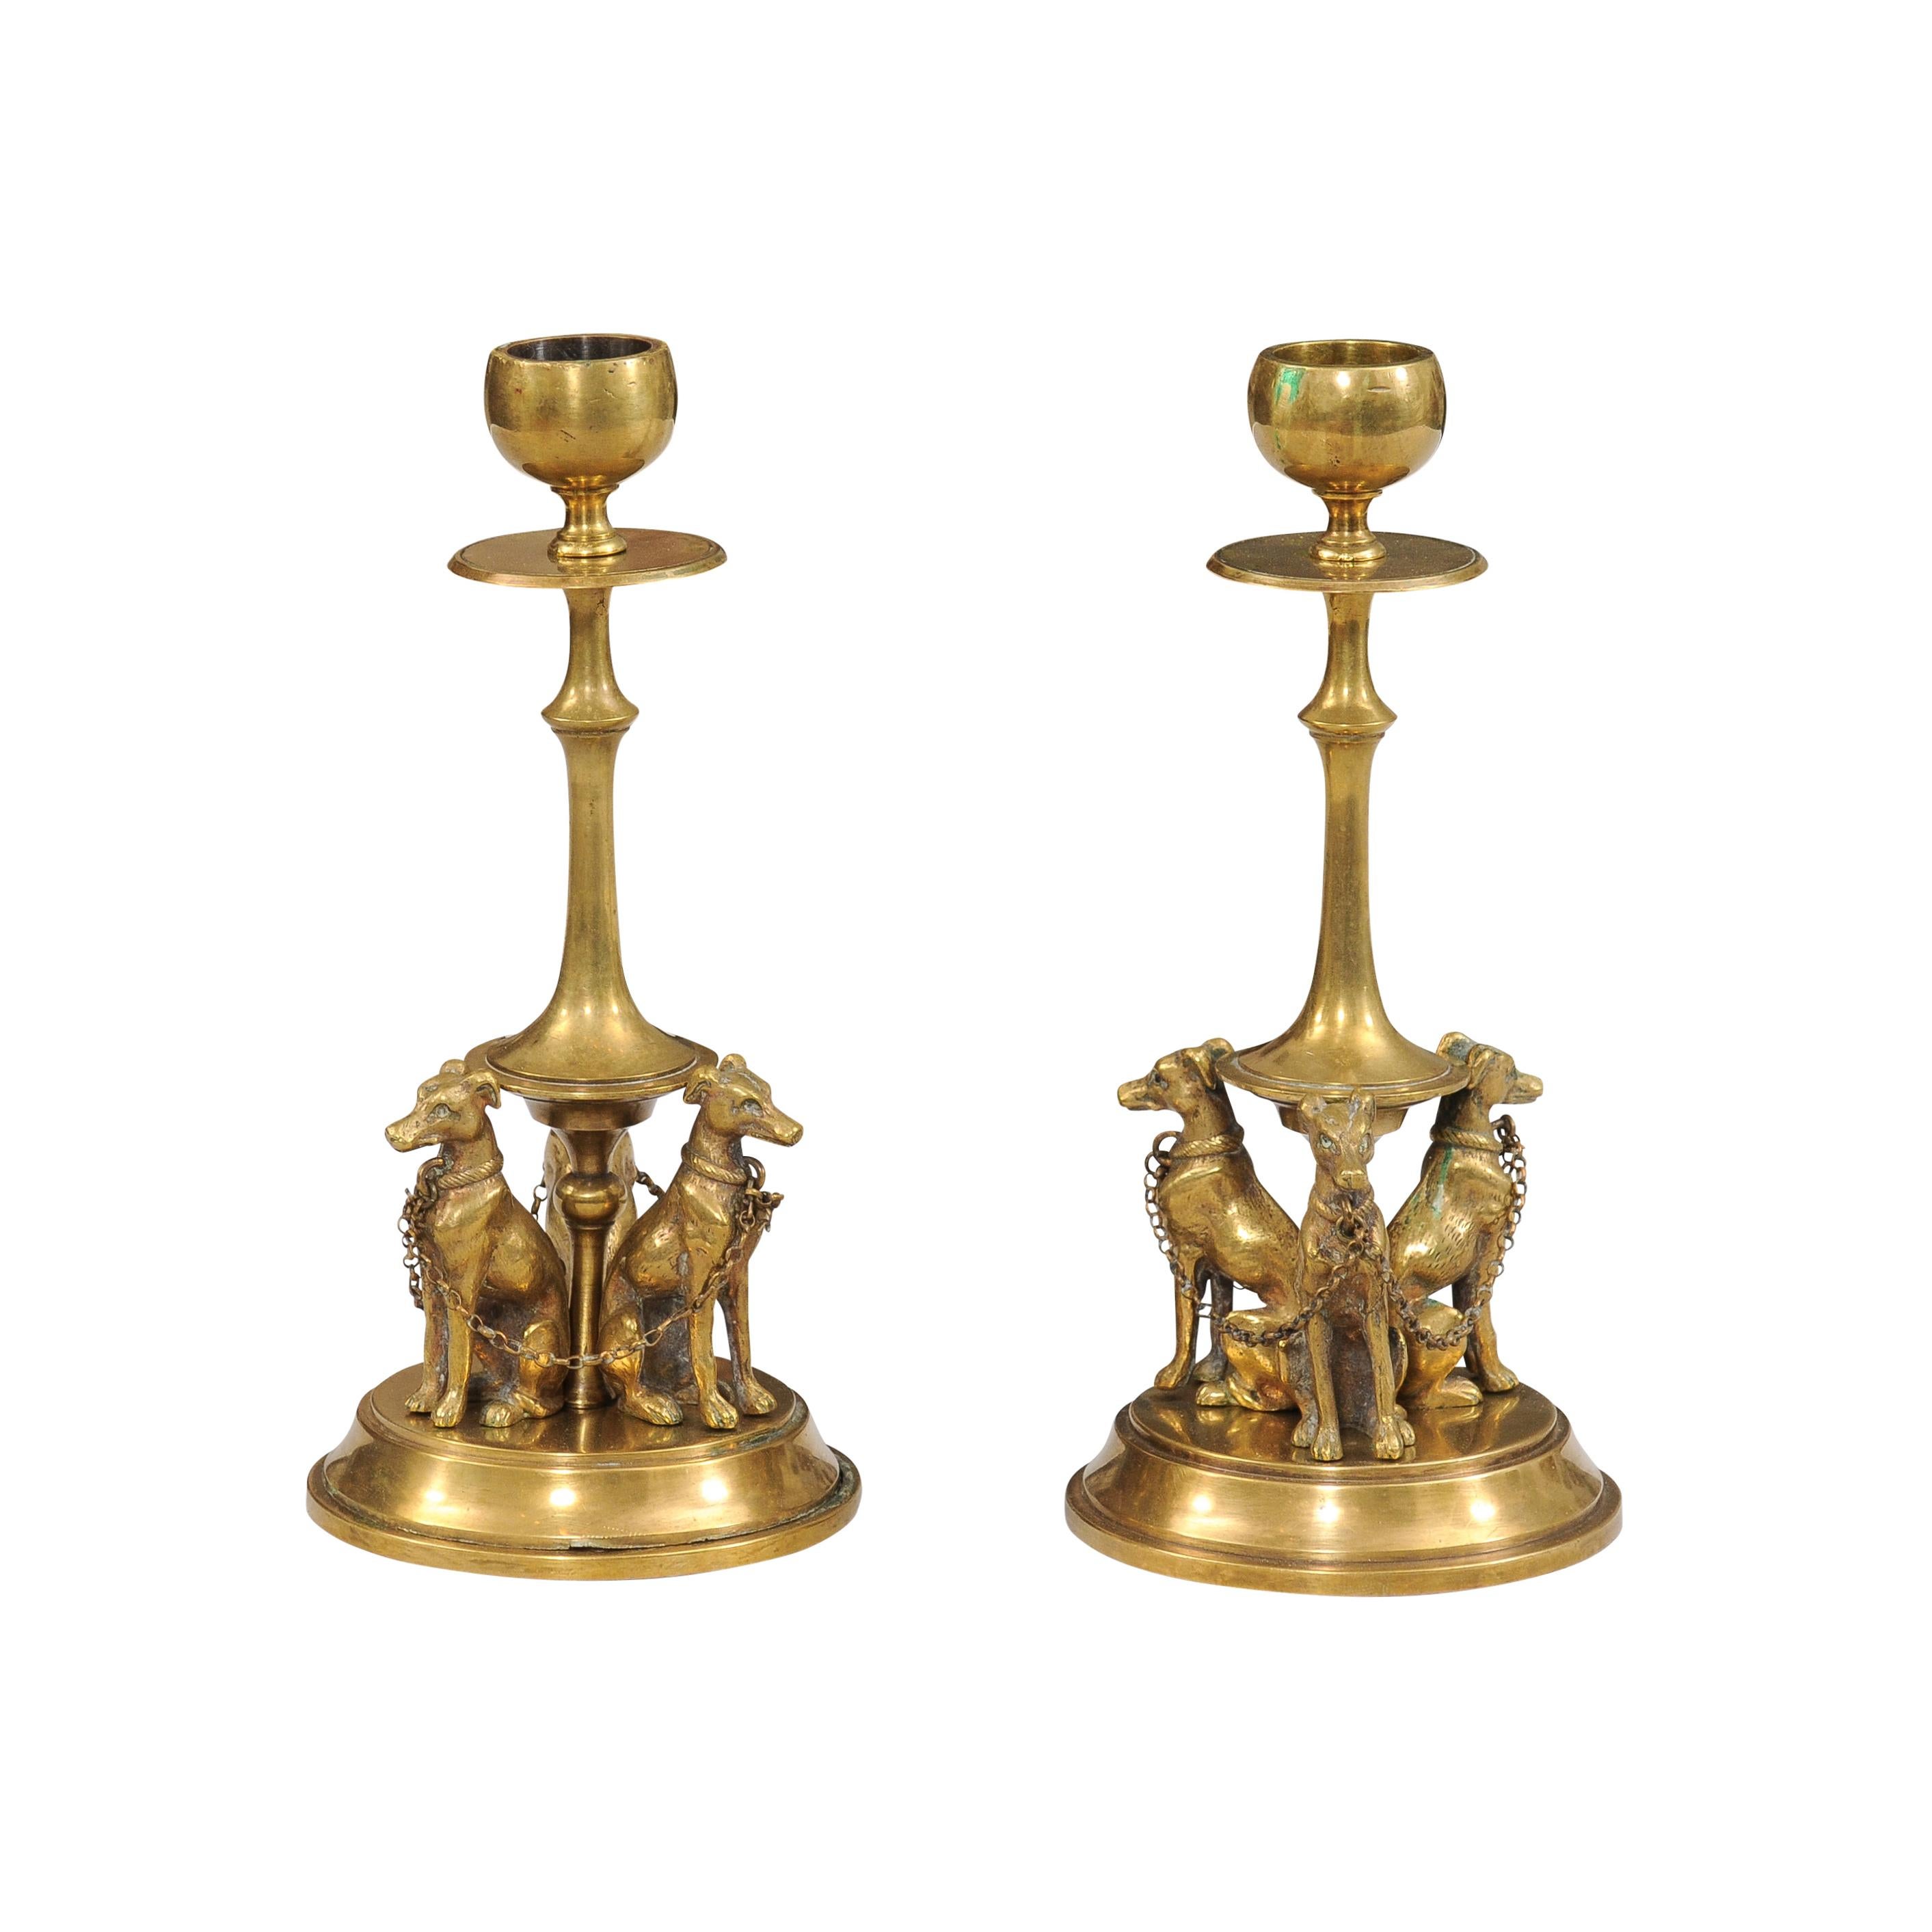 Ein Paar französischer Bronzeleuchter aus dem 19. Jahrhundert, die im unteren Teil jeweils drei Windhunde darstellen, die durch an ihren Halsbändern befestigte Kettenglieder miteinander verbunden sind. Dieses Paar französischer Bronzeleuchter aus